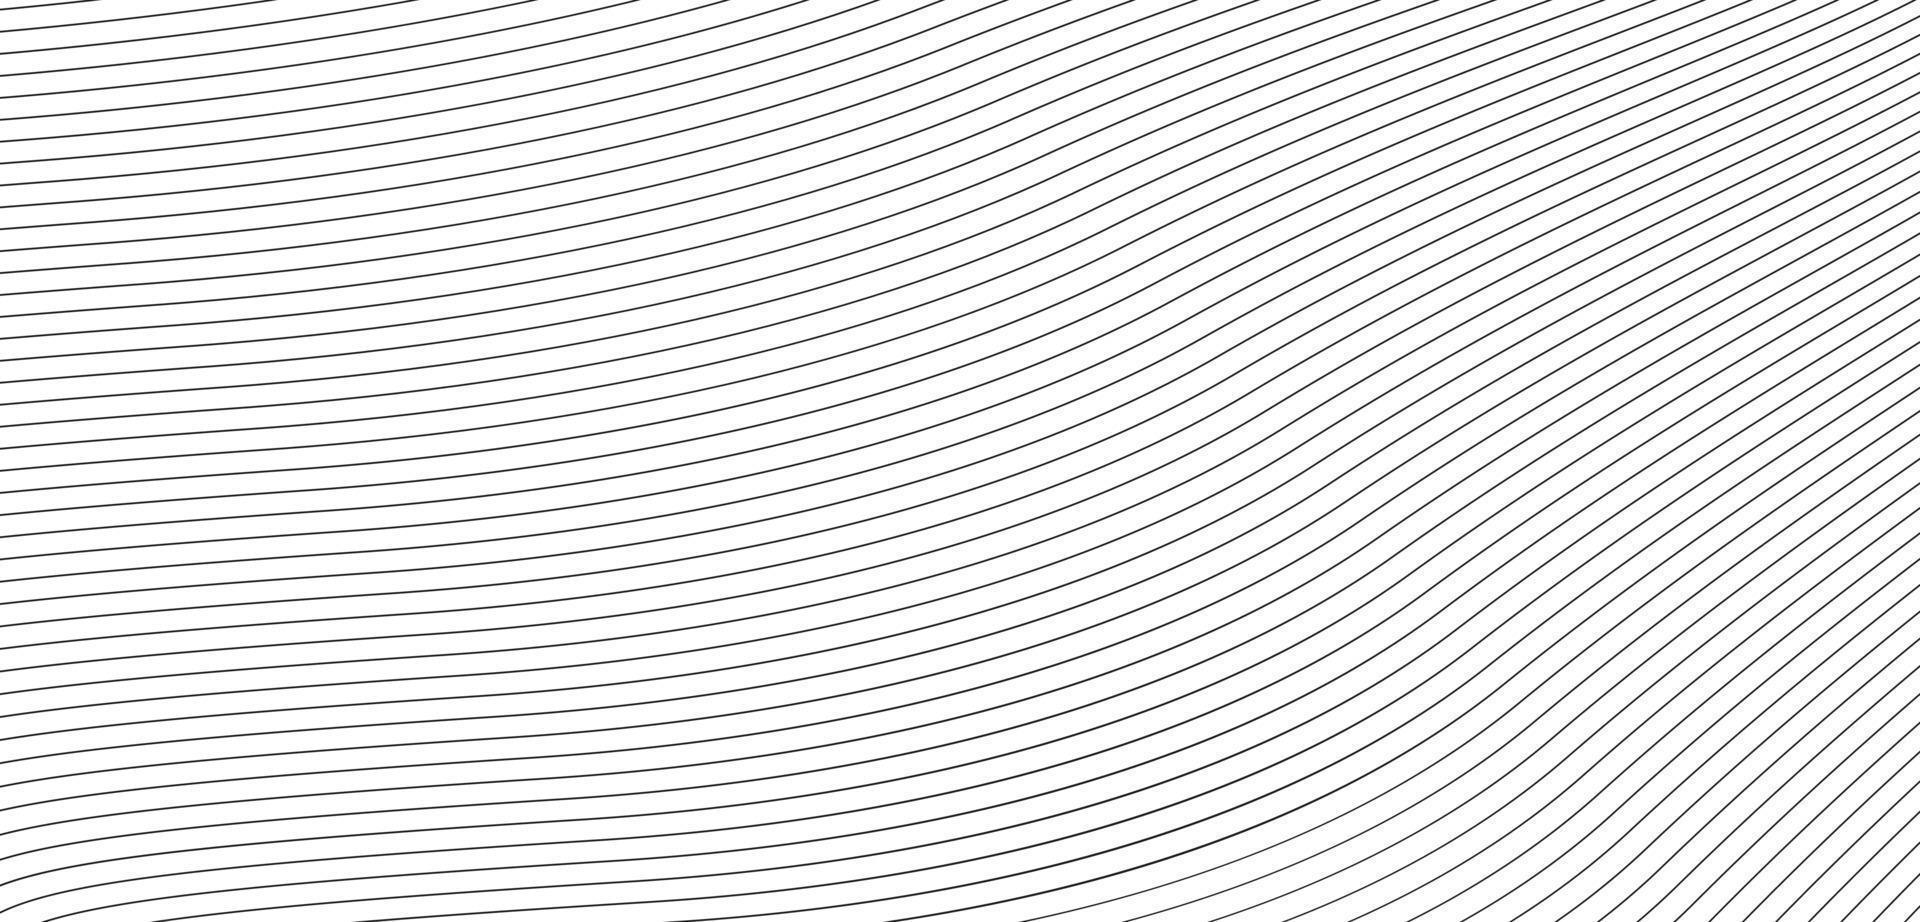 linee di fusione nere astratte con striscia obliqua su sfondo bianco illustrazione vettoriale